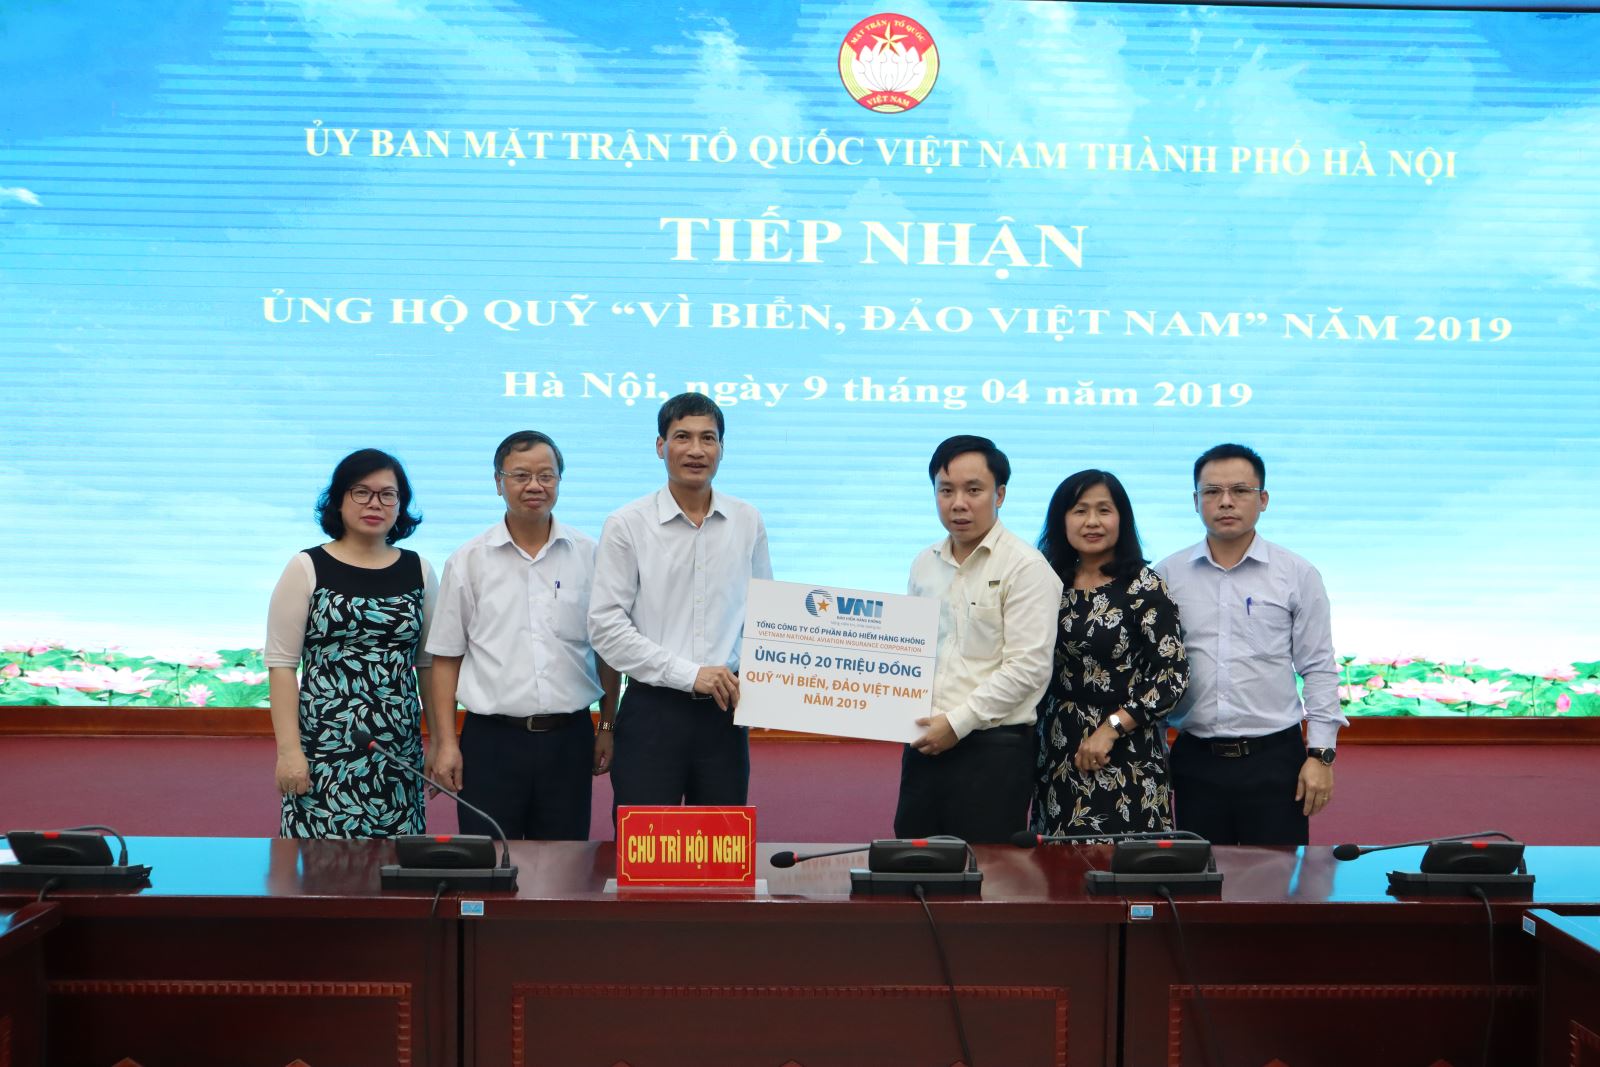 Bảo hiểm Hàng không (VNI) ủng hộ 20 triệu đồng quỹ vì biển, đảo Việt Nam